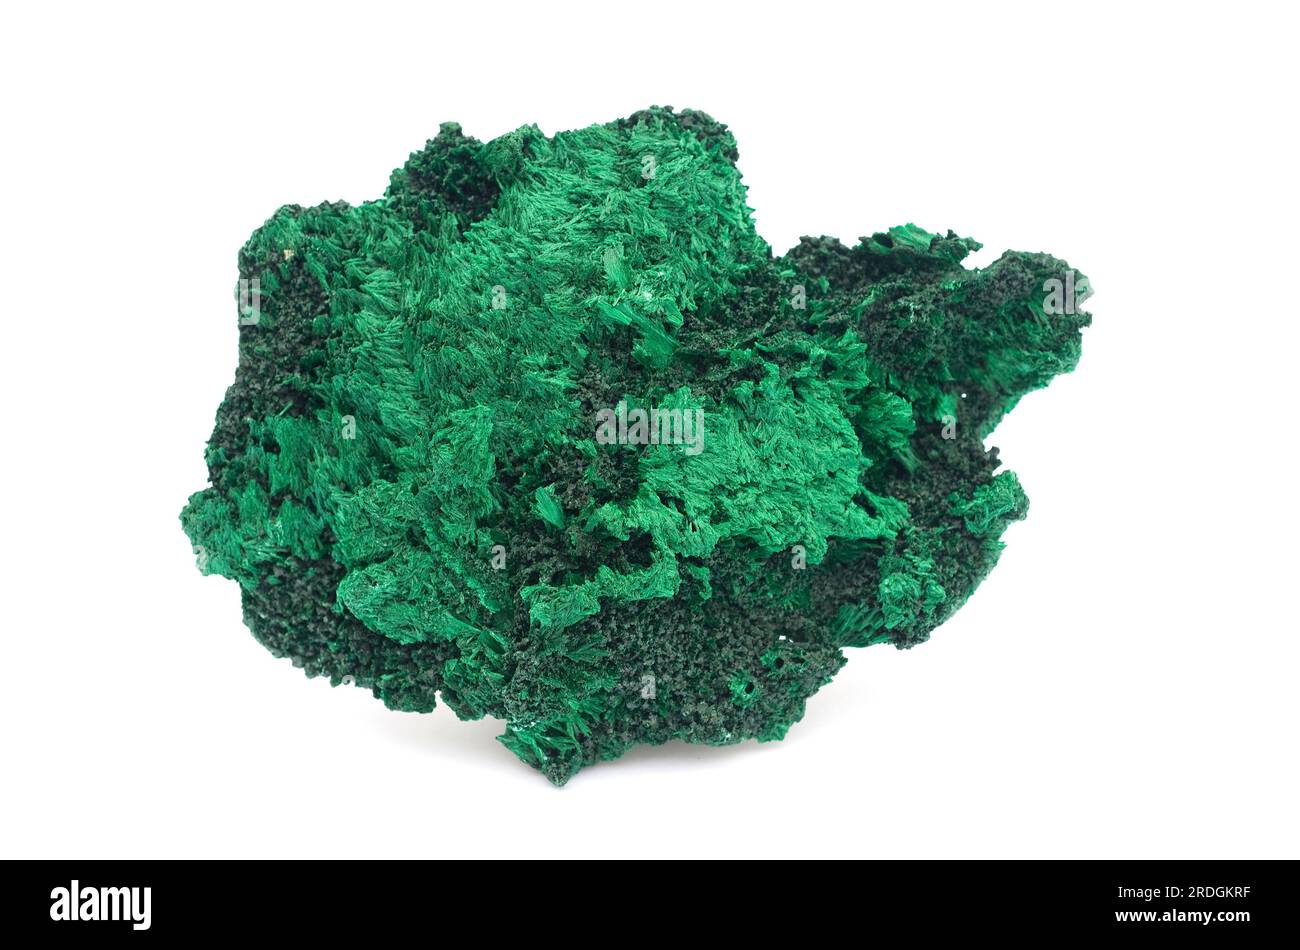 La malachite est un minéral hydroxyde de carbonate de cuivre. Cet échantillon provient du Katanga, République démocratique du Congo (Zaïre). Banque D'Images